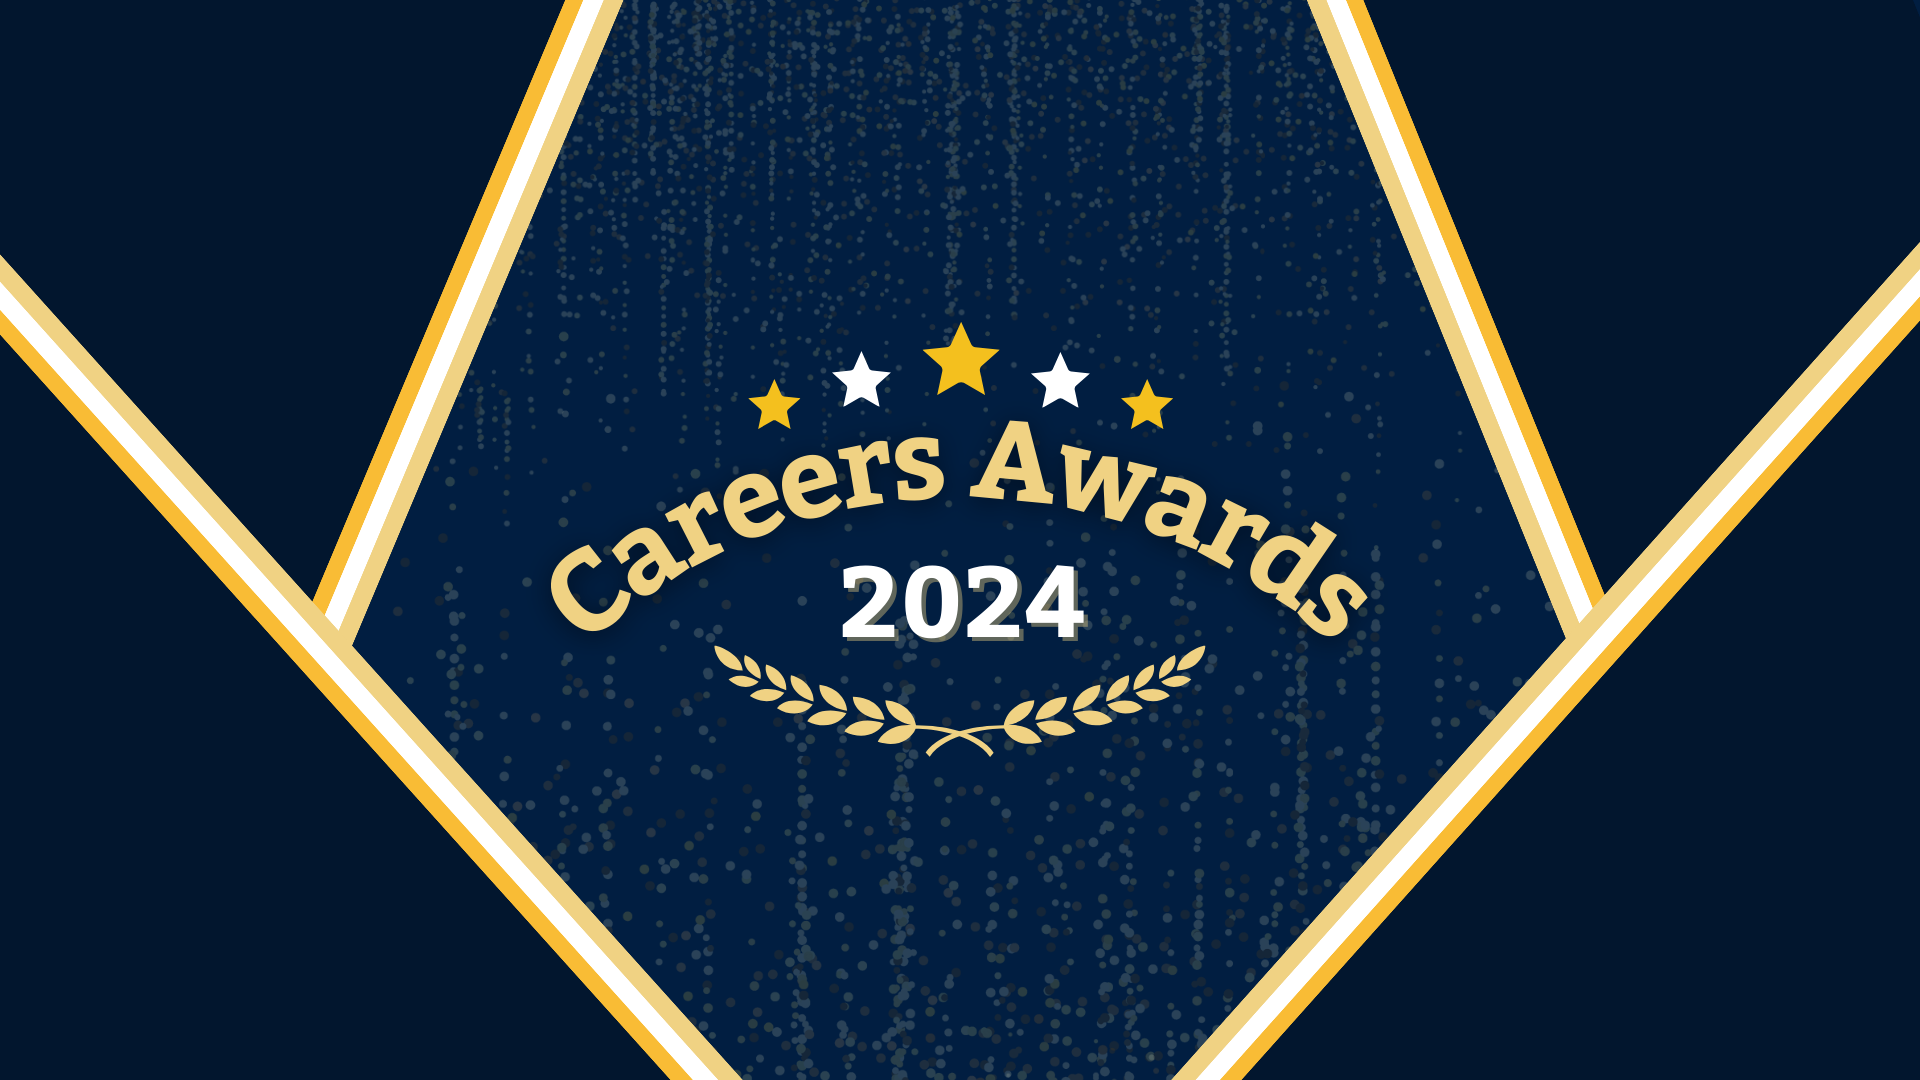 Careers Awards 2024 Logo